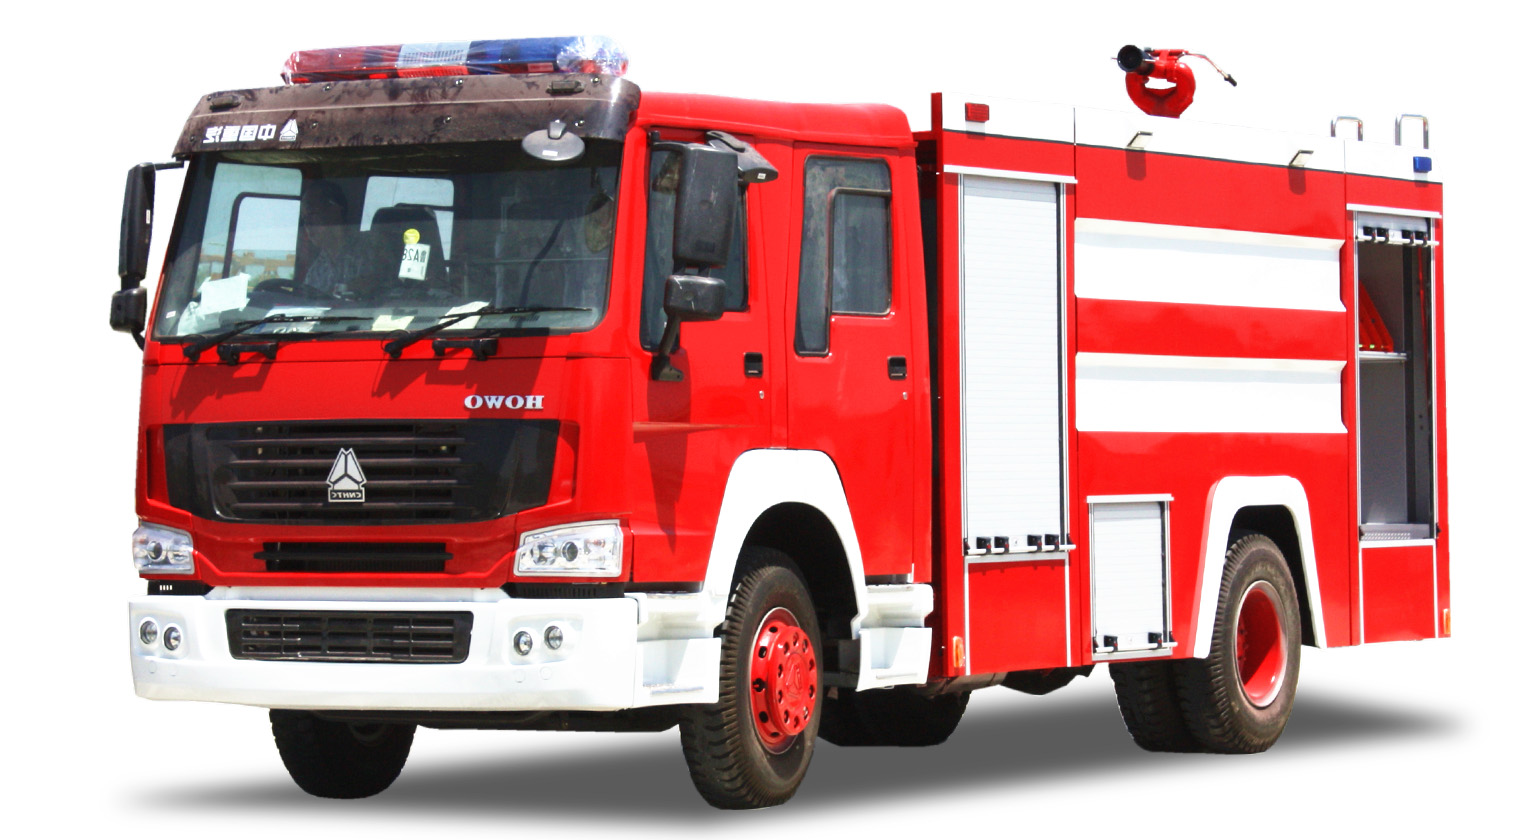 抢险救援消防车价格|厂家|配件|视频|型号参数-王力汽车网